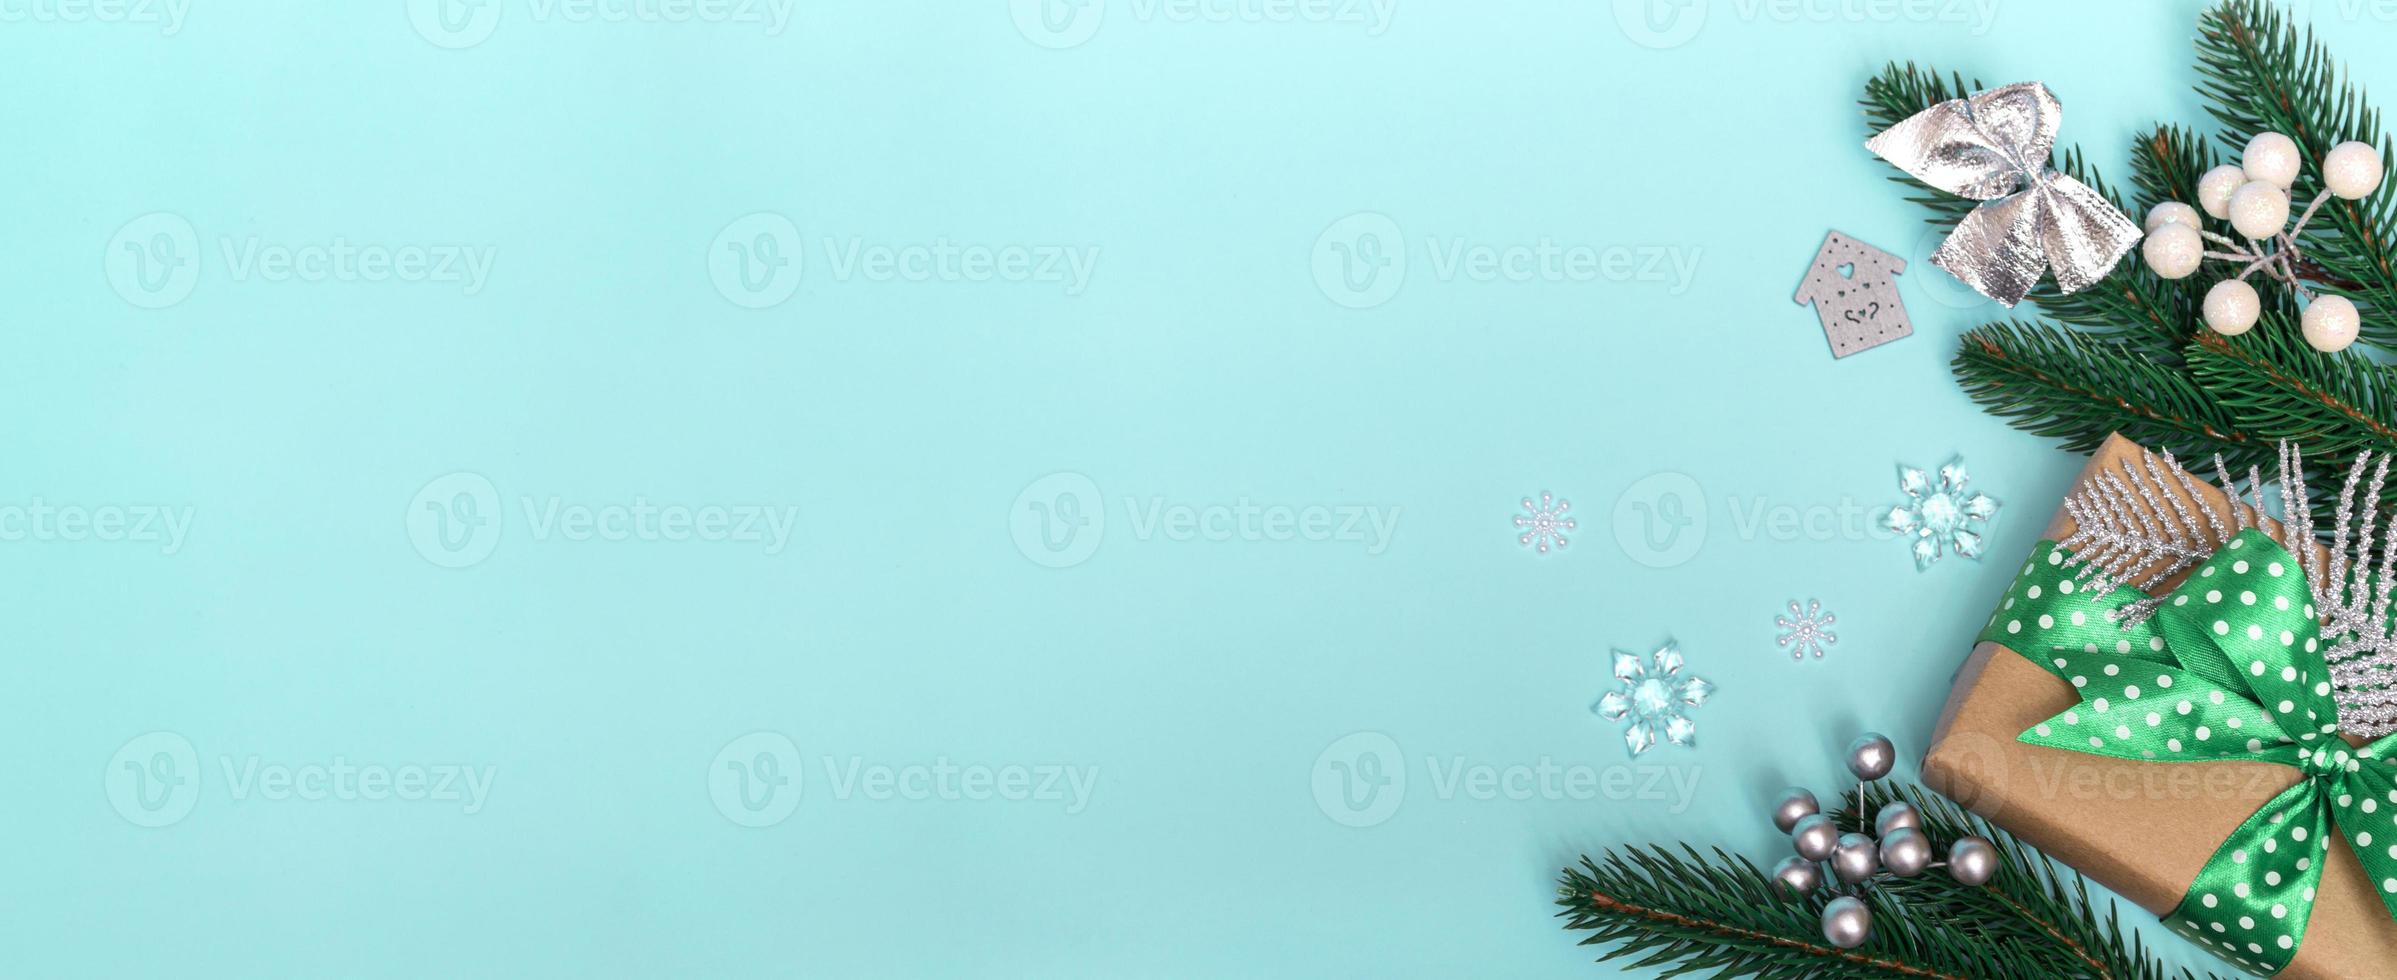 god Jul och Gott Nytt År. platt lägga av en gåva med ett grönt prickigt band och ornament på en blå bakgrund. julkort kopia utrymme närbild foto